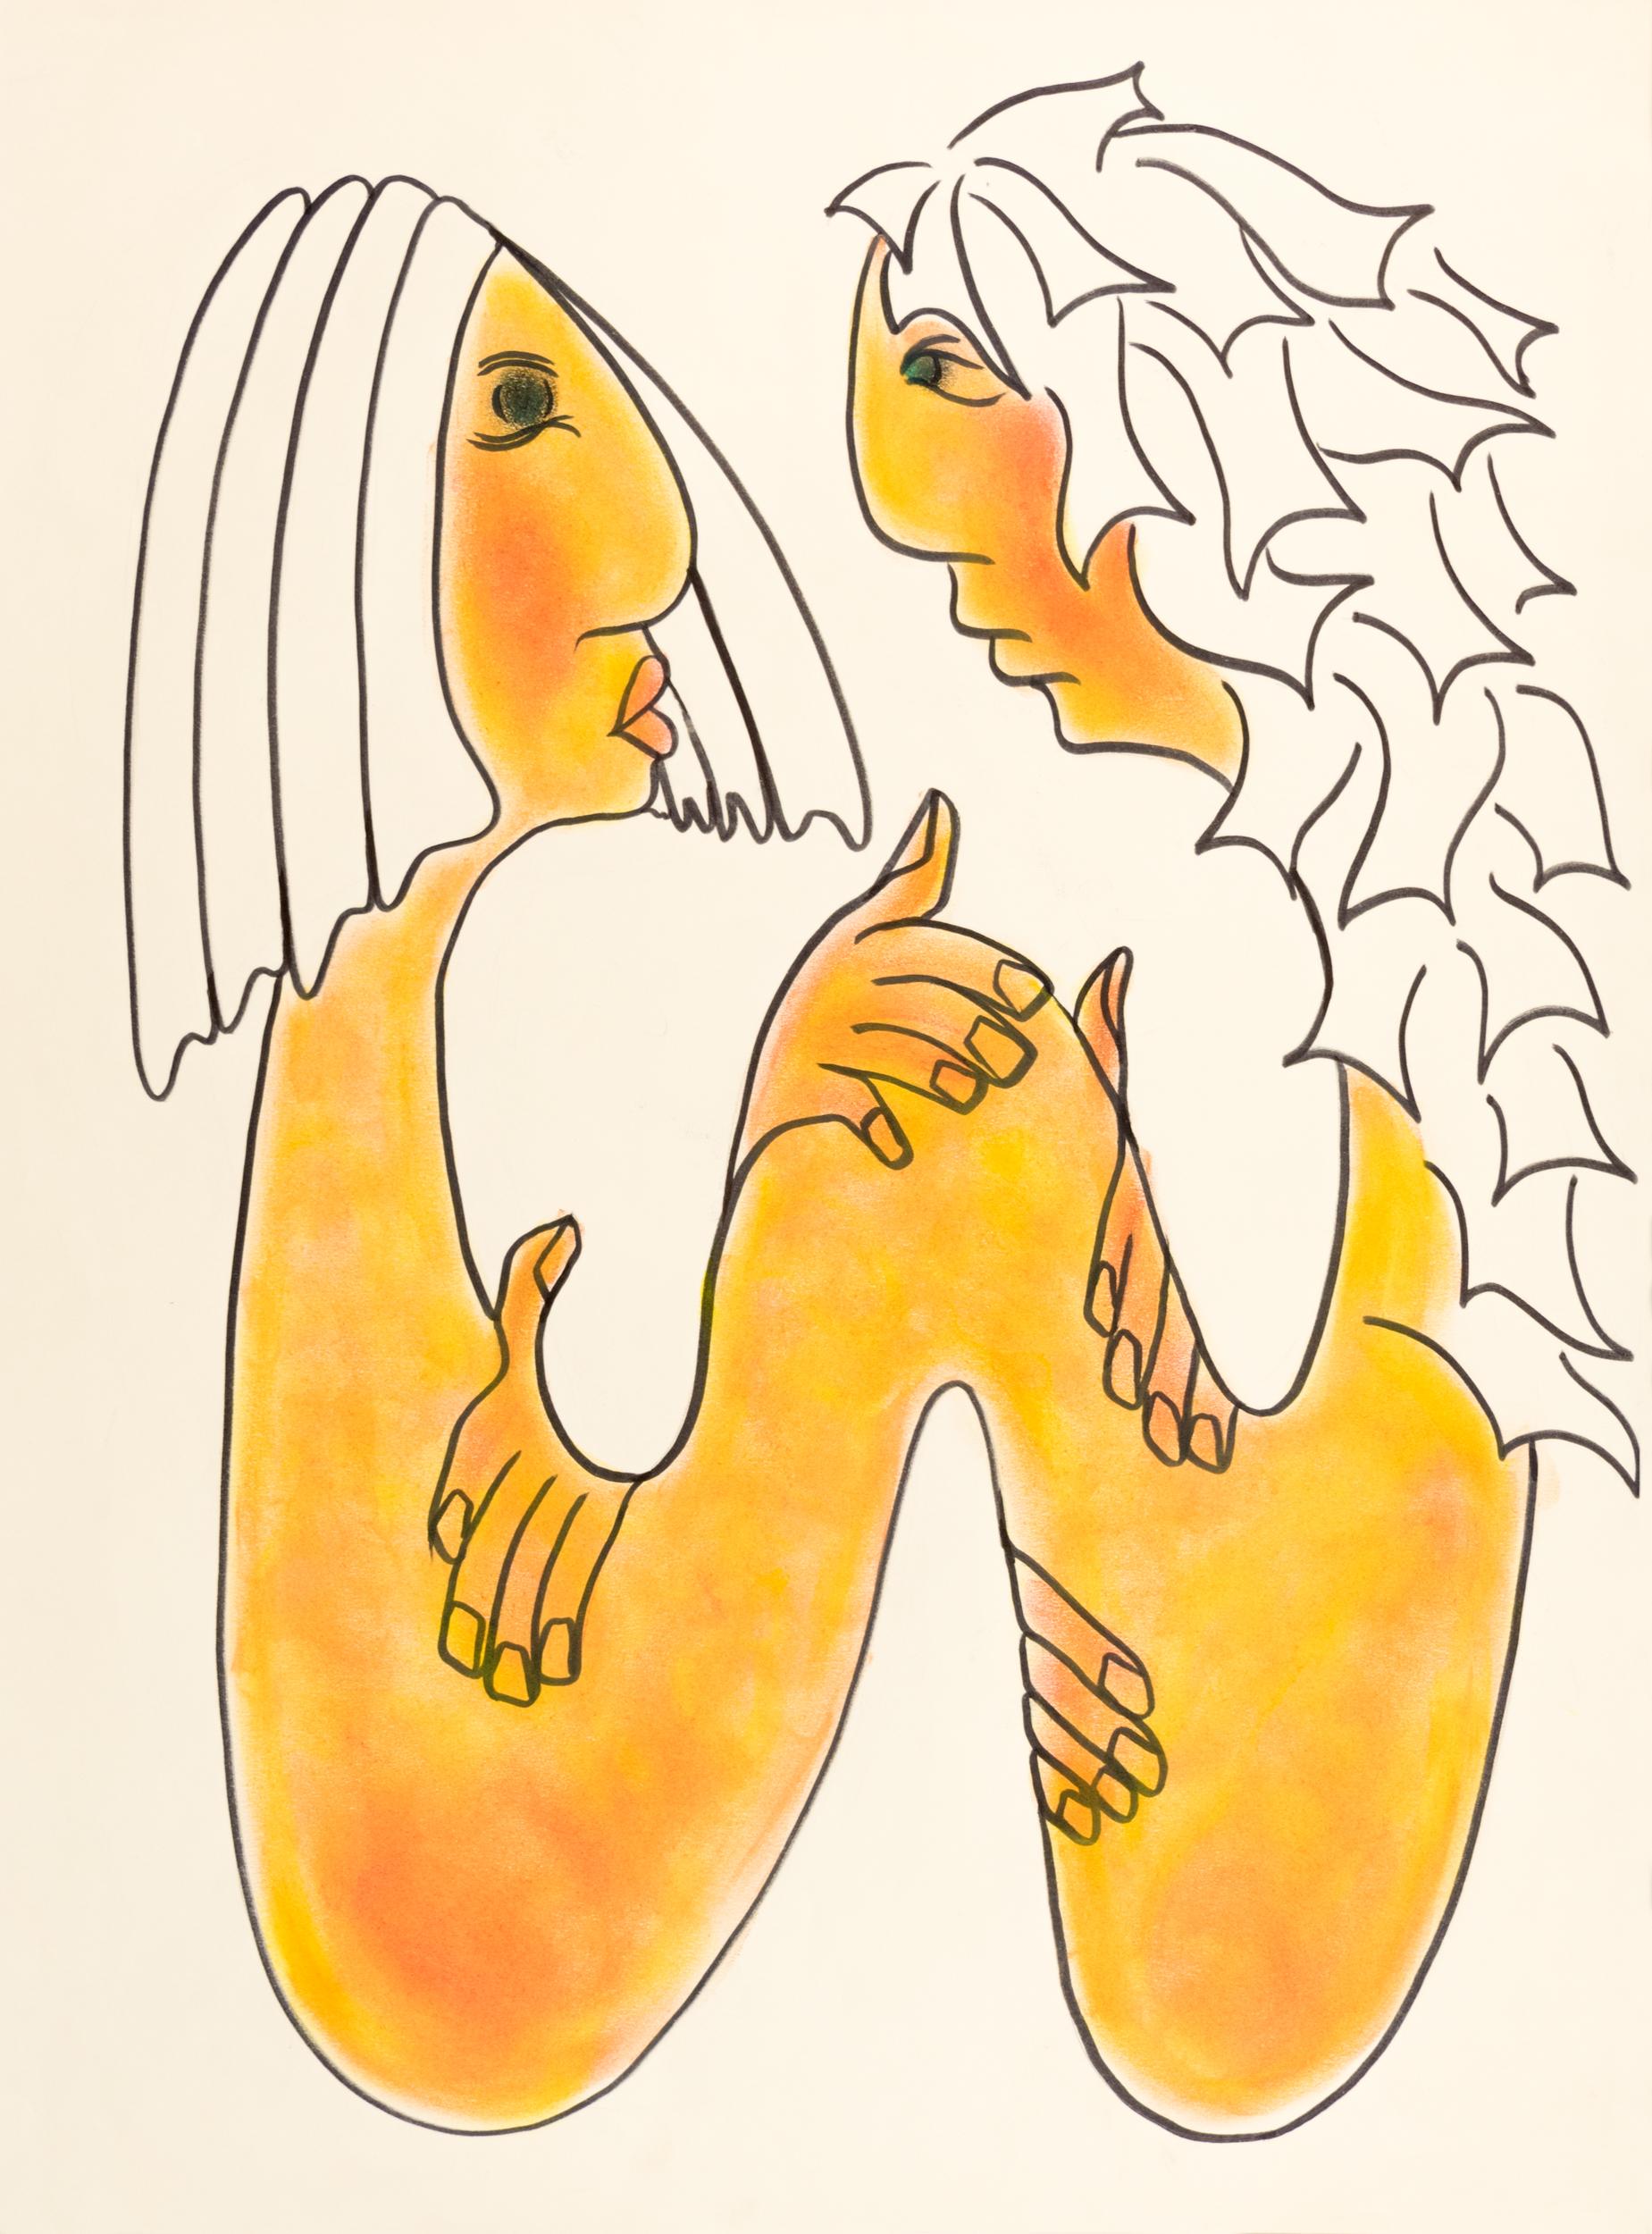 LOVER'S TWINE - Impression à l'encre crayon abstraite et giclée pastel de Nora Pineda non encadrée